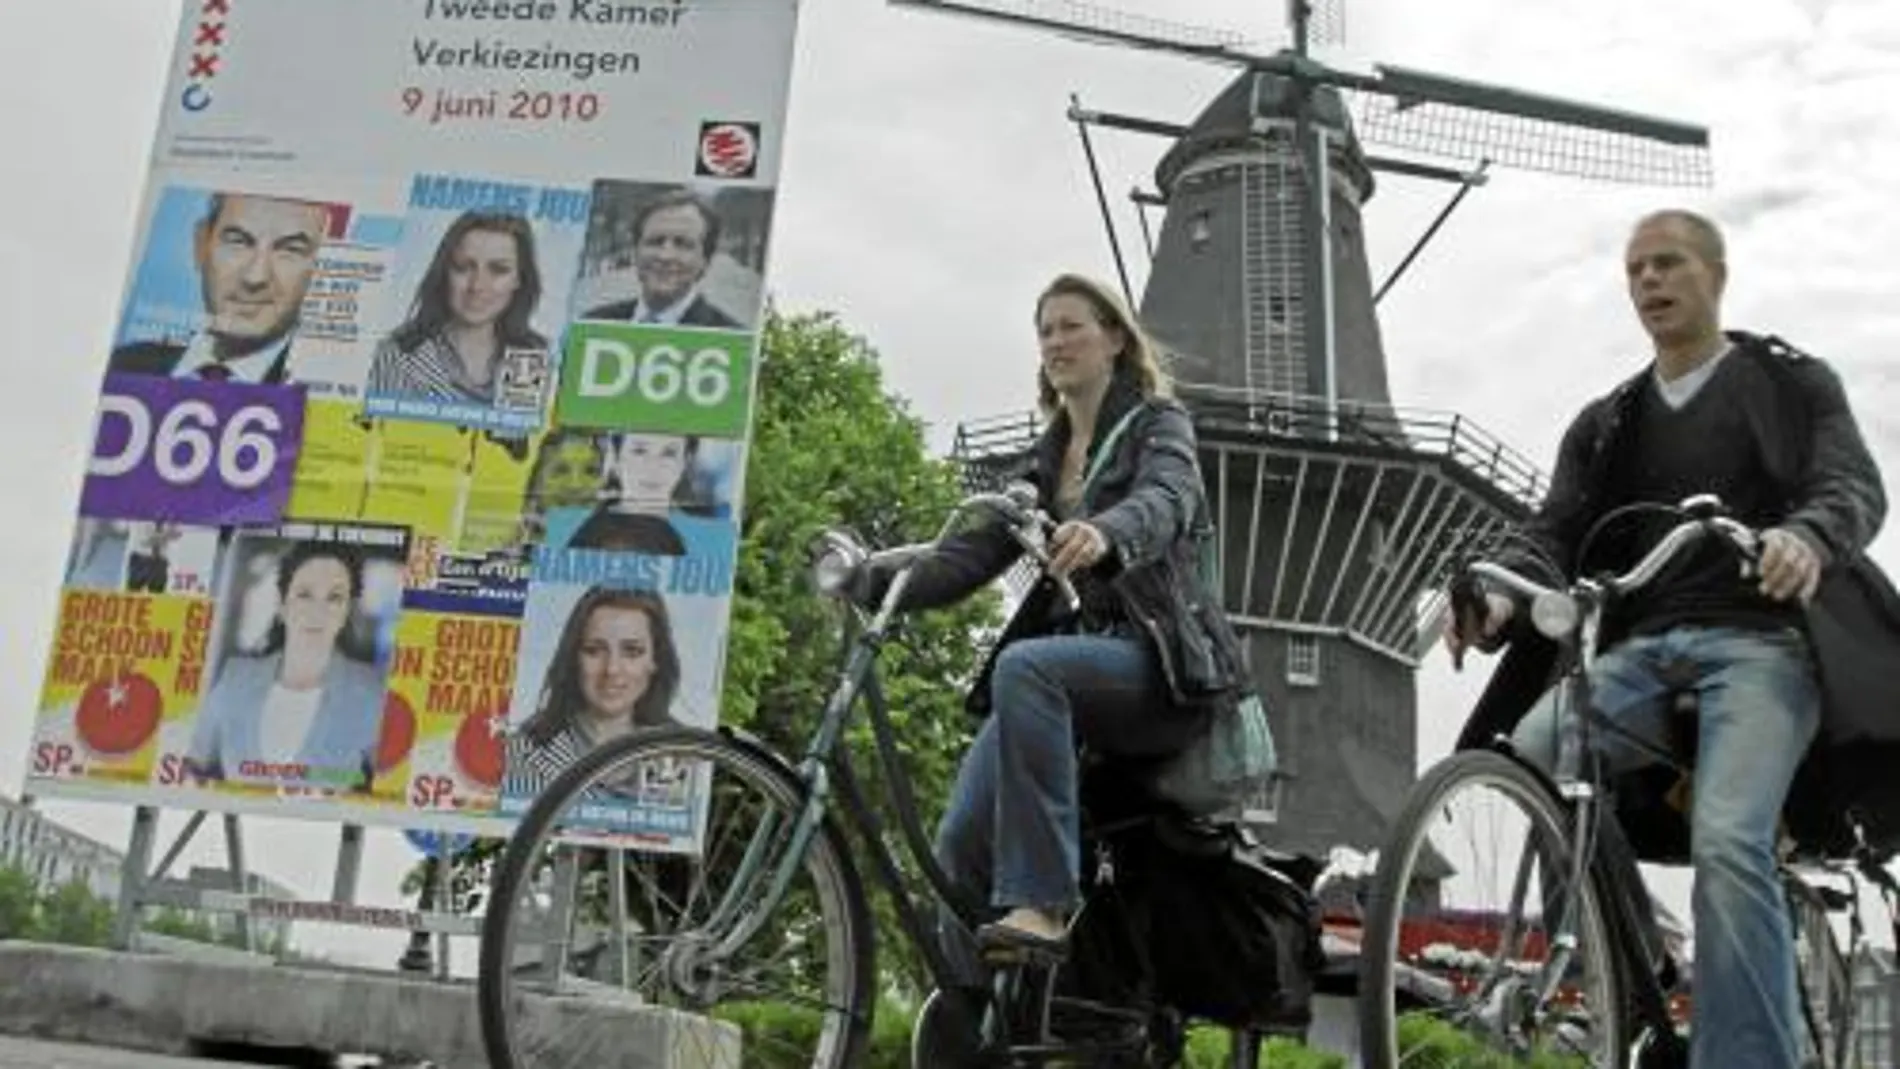 A UN DÍA DE LAS ELECCIONES Dos holandeses pasean con sus bicicletas por una calle de Ámsterdam